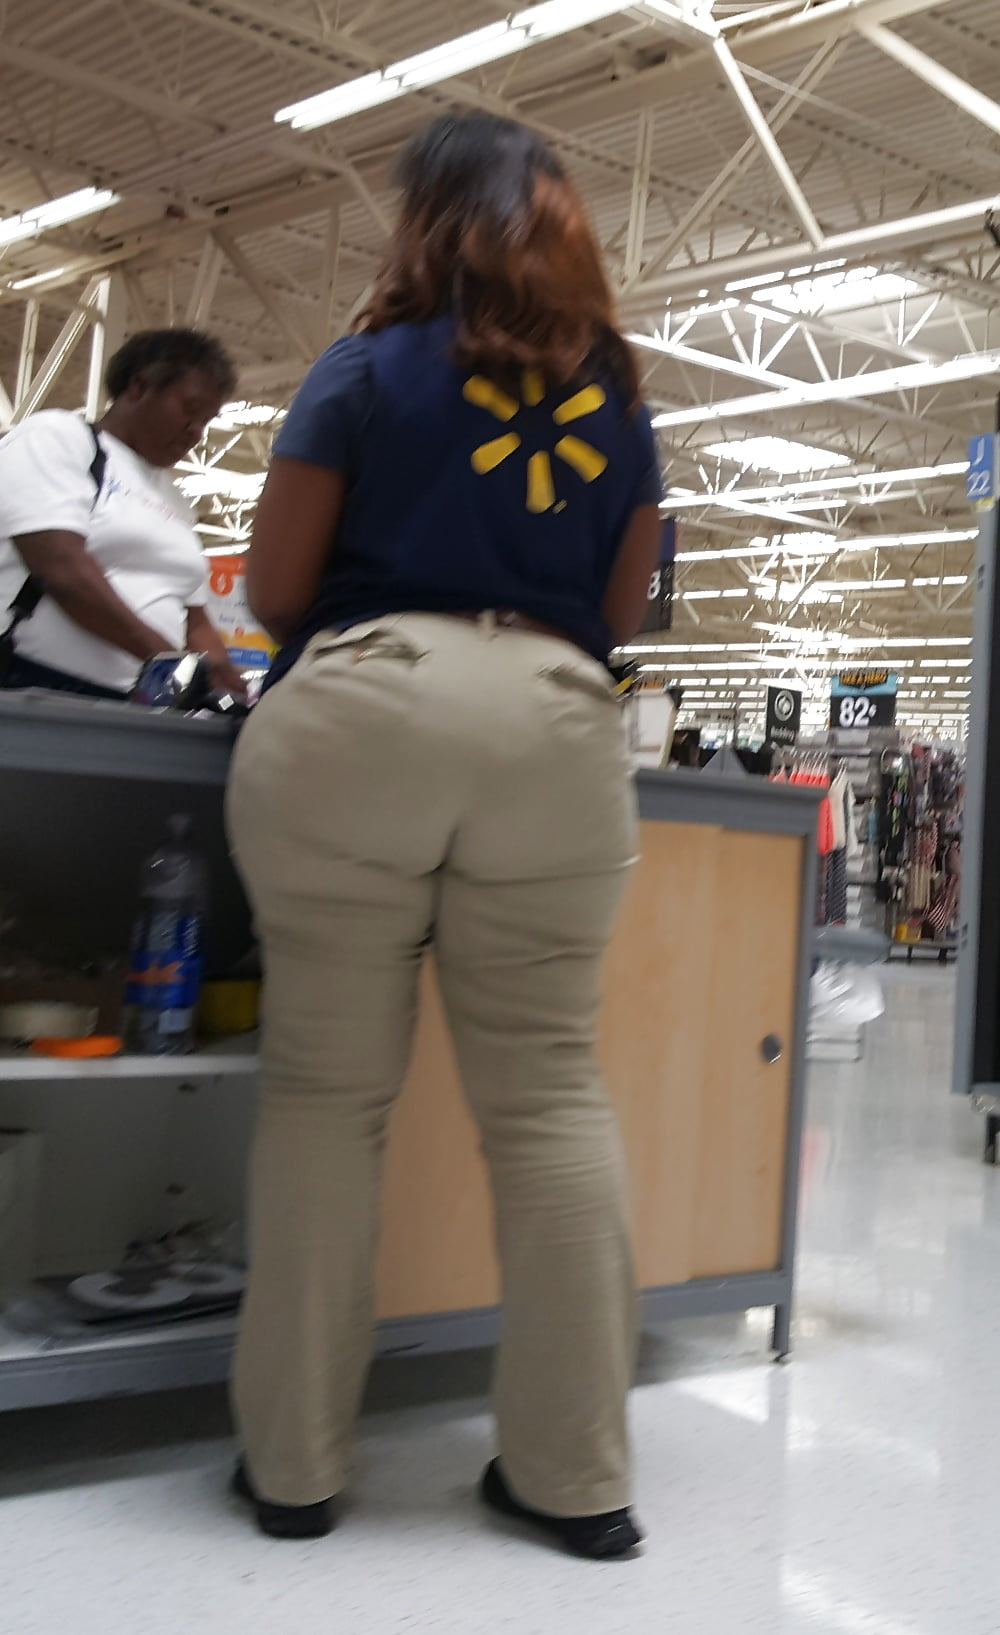 Wal-Mart Creep shot huge ass employee (13/26)